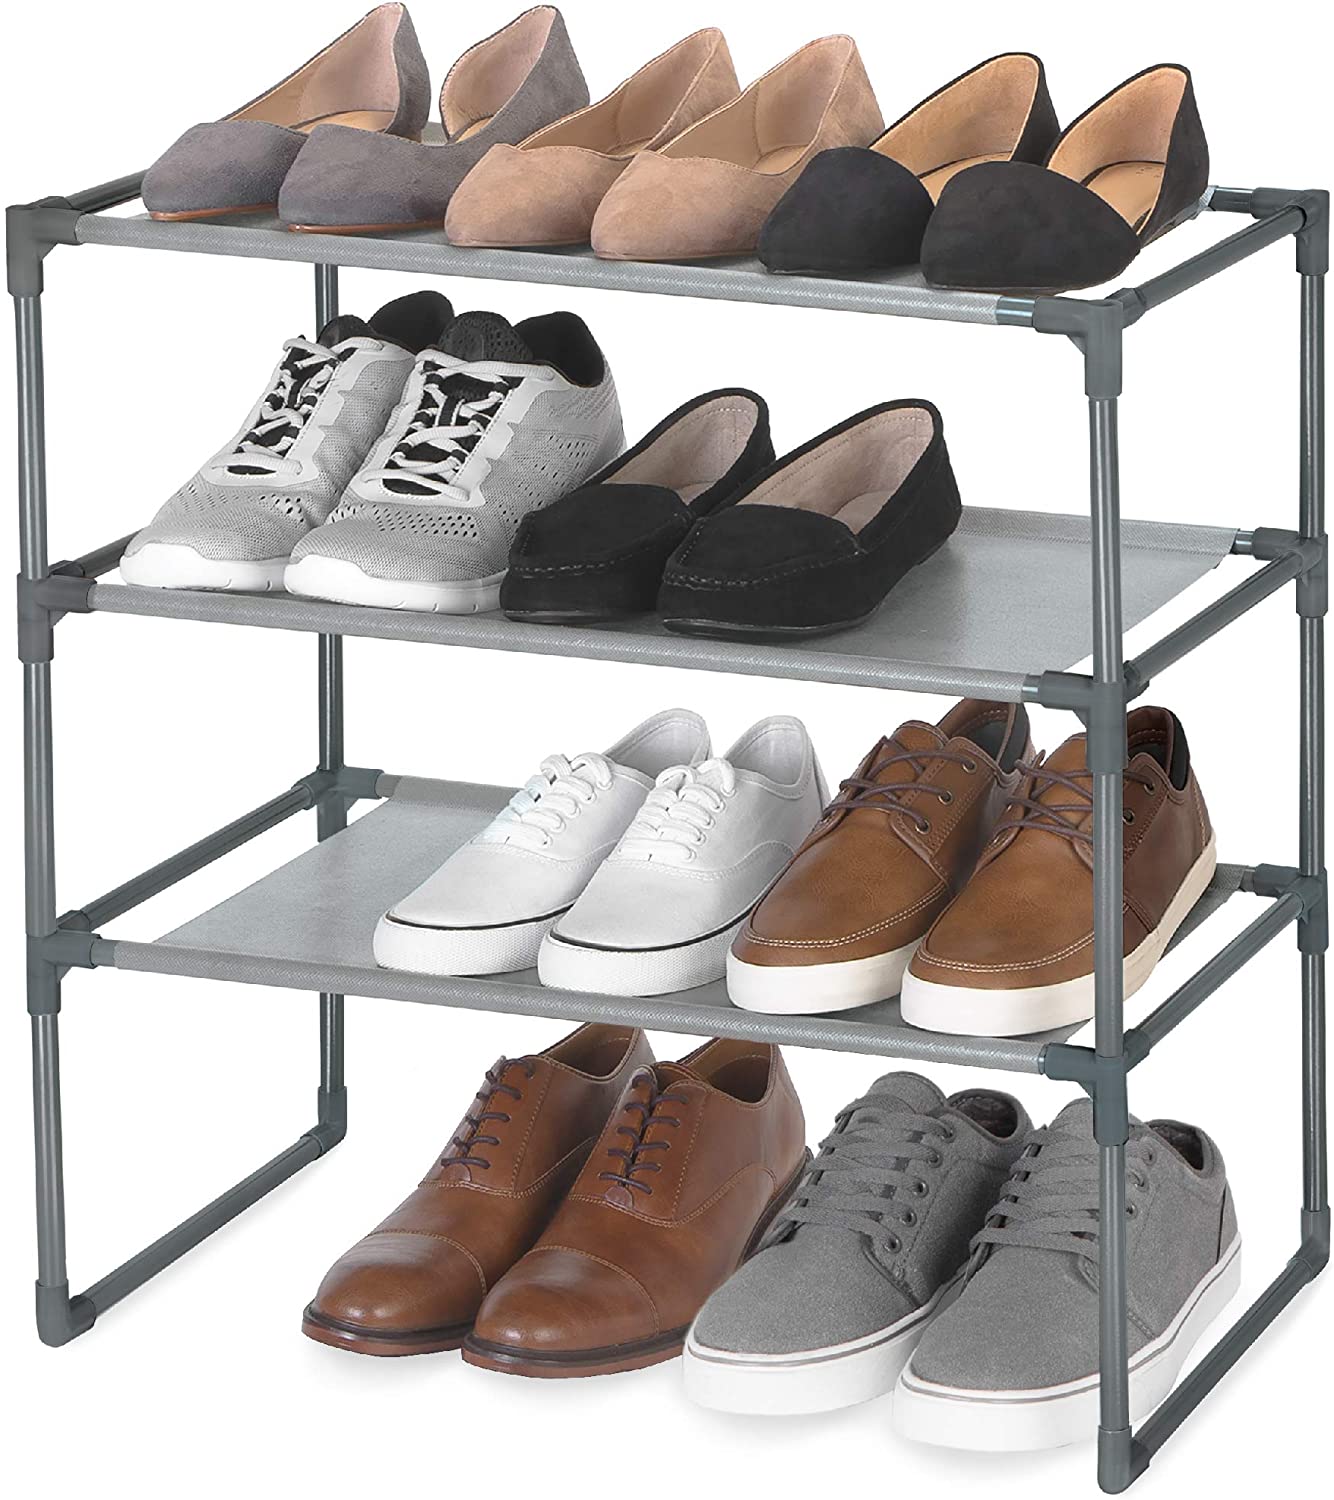 Shoe Rack Shelf with Laminated Liner - Smart Design® 12